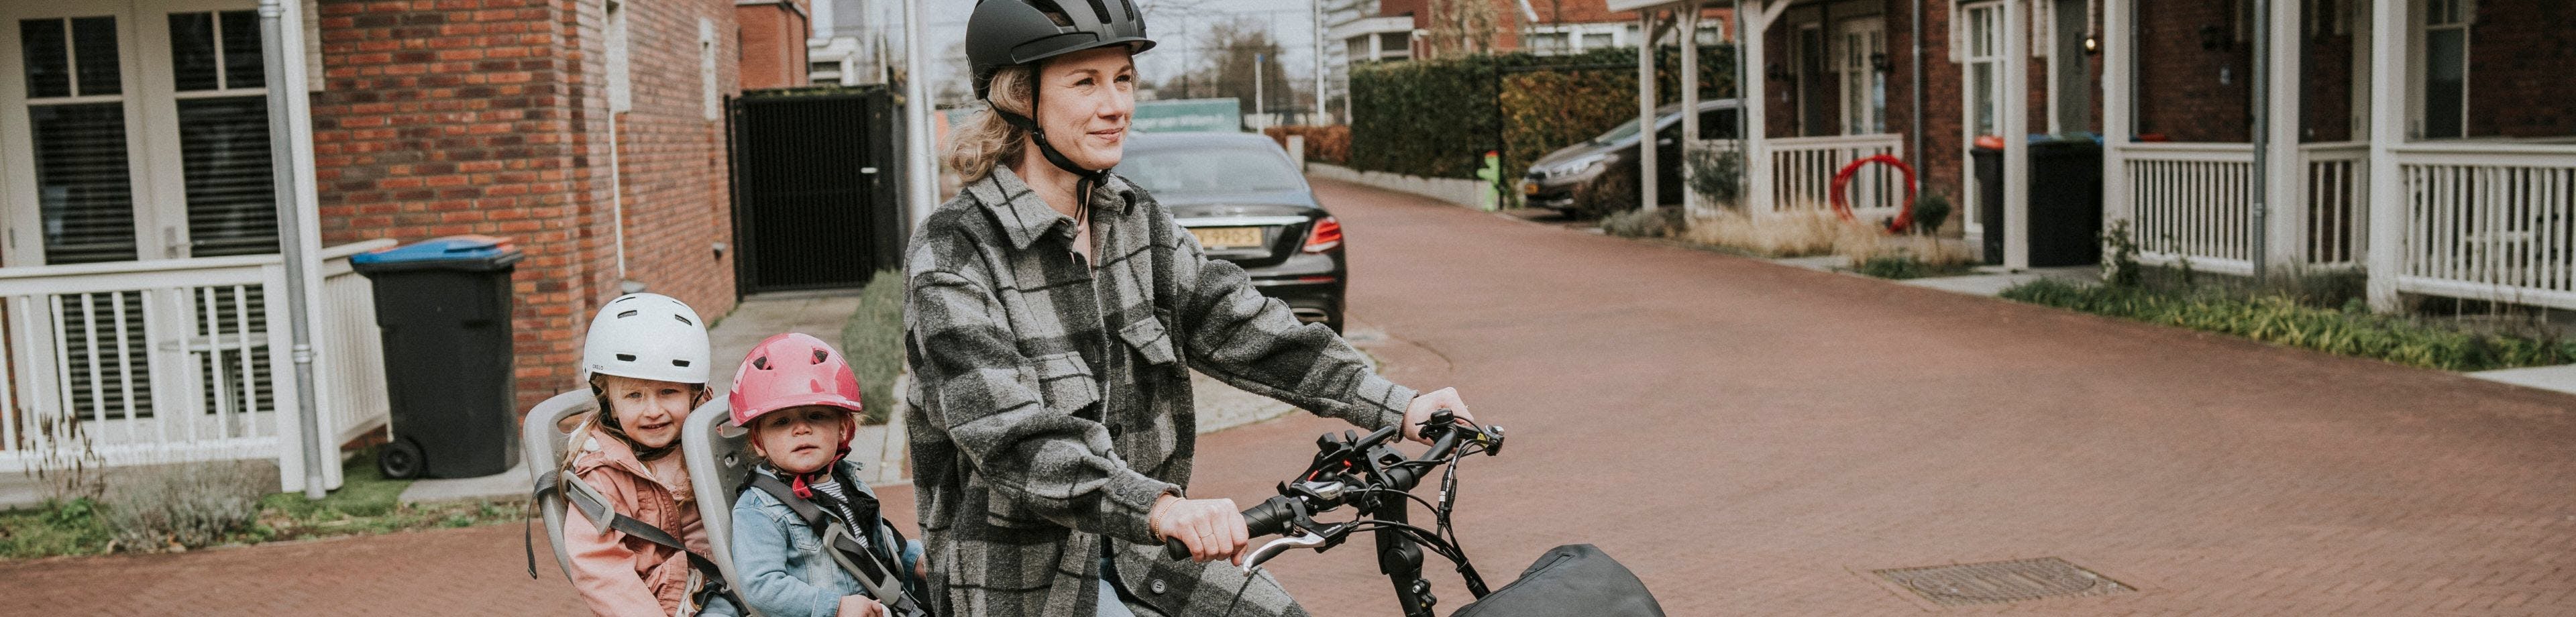 Een jonge vrouw zit op de fiets, met 2 kleine kinderen achterop. Ze hebben aandacht voor hun veiligheid, daarom dragen ze een fietshelm.